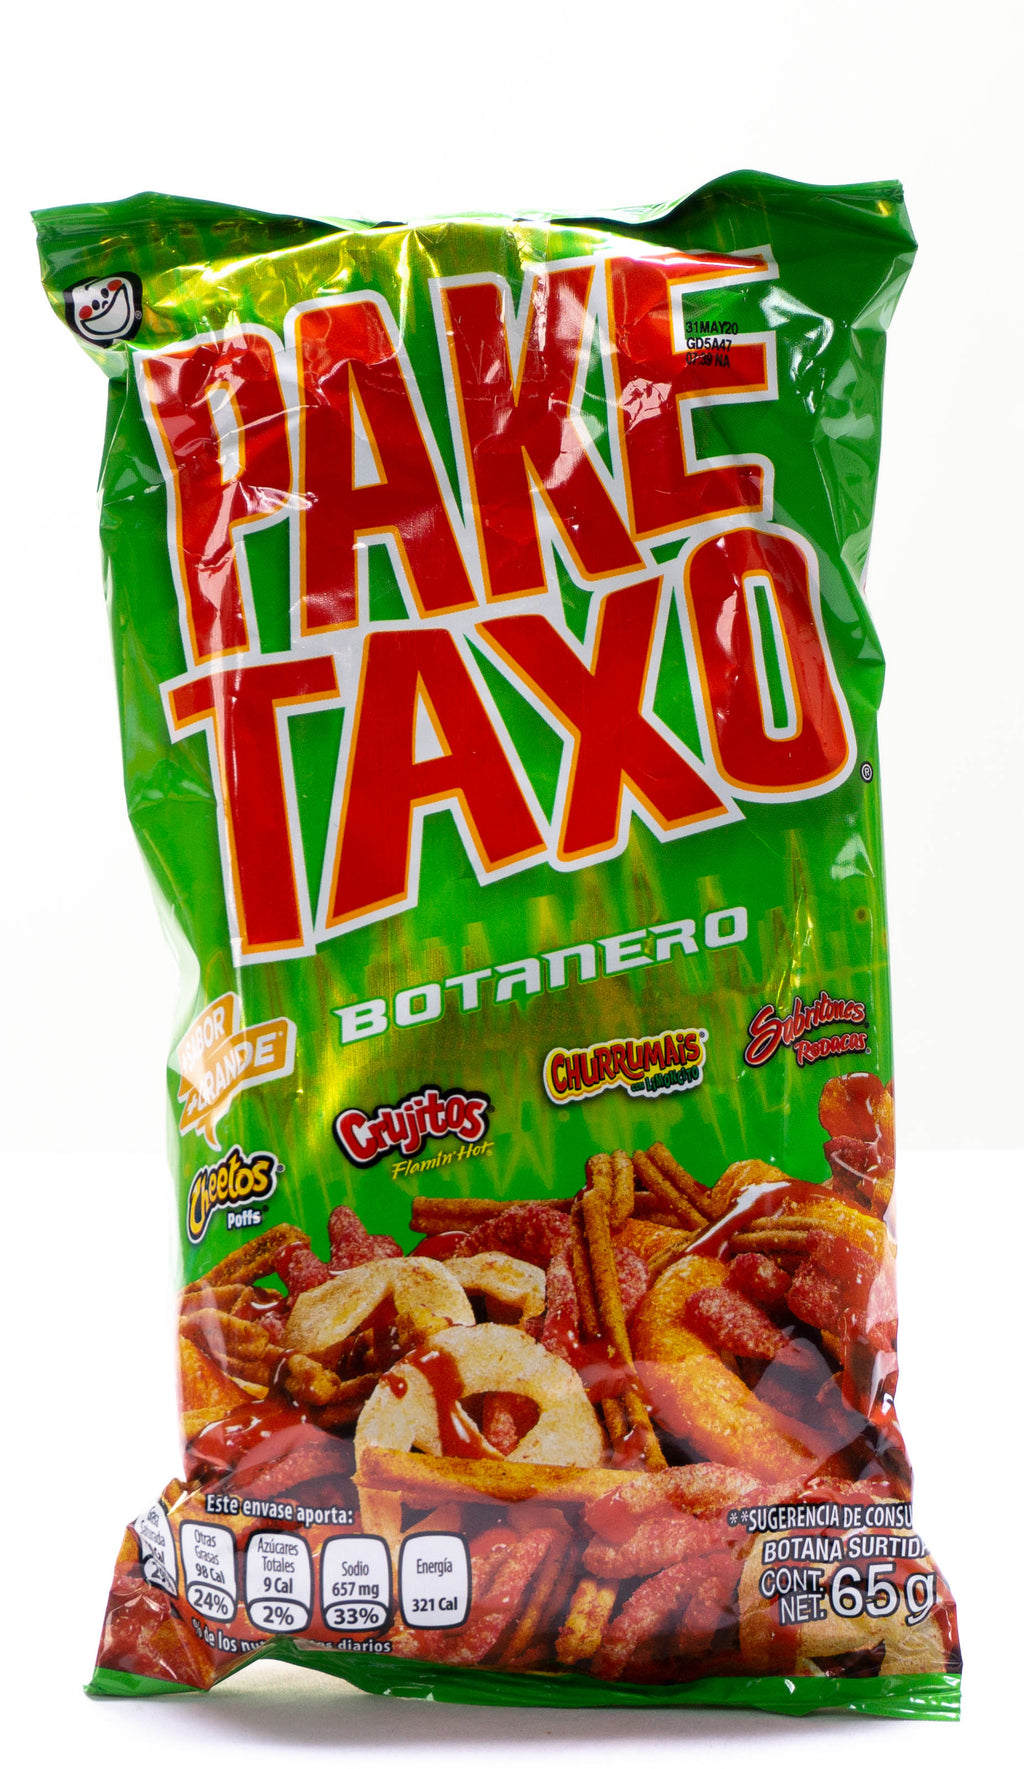 Pake-Taxo Botanero